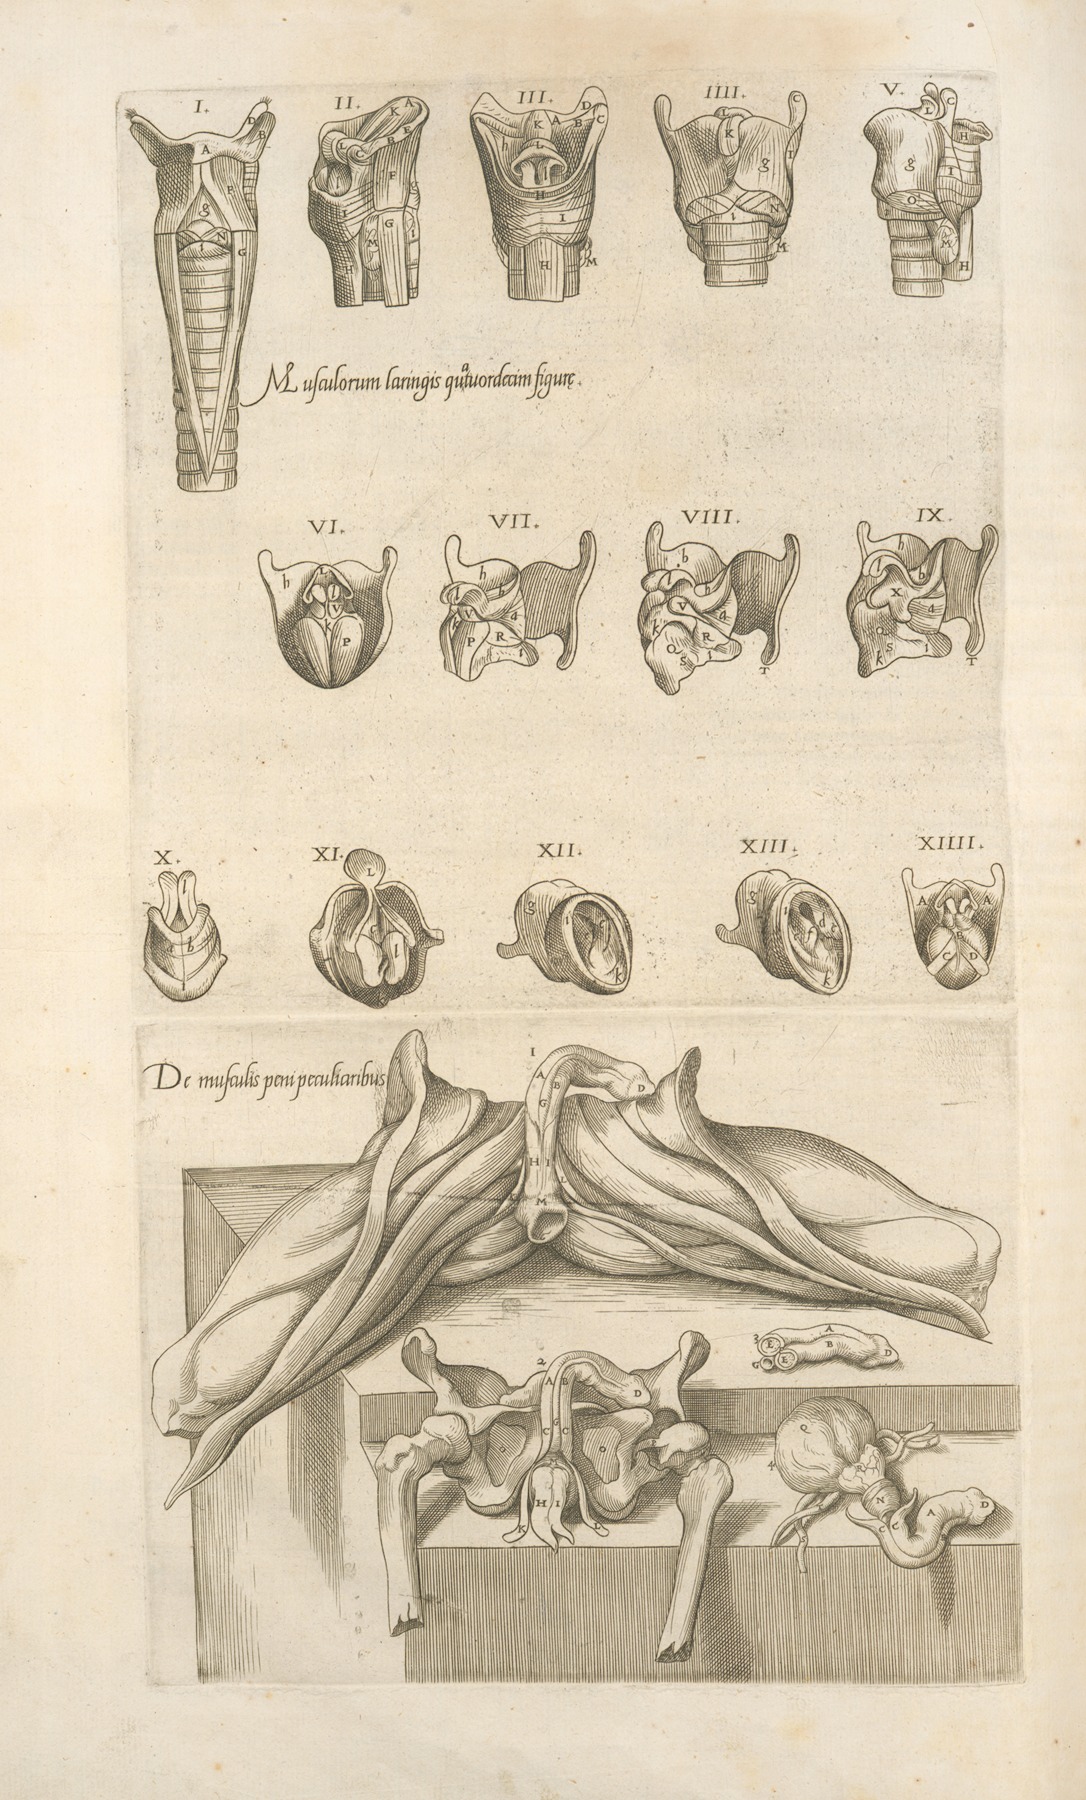 Thomas Geminus - 1. Musculorum laringis quartuordecim figurç – 2. De musculis peni peculiaribus